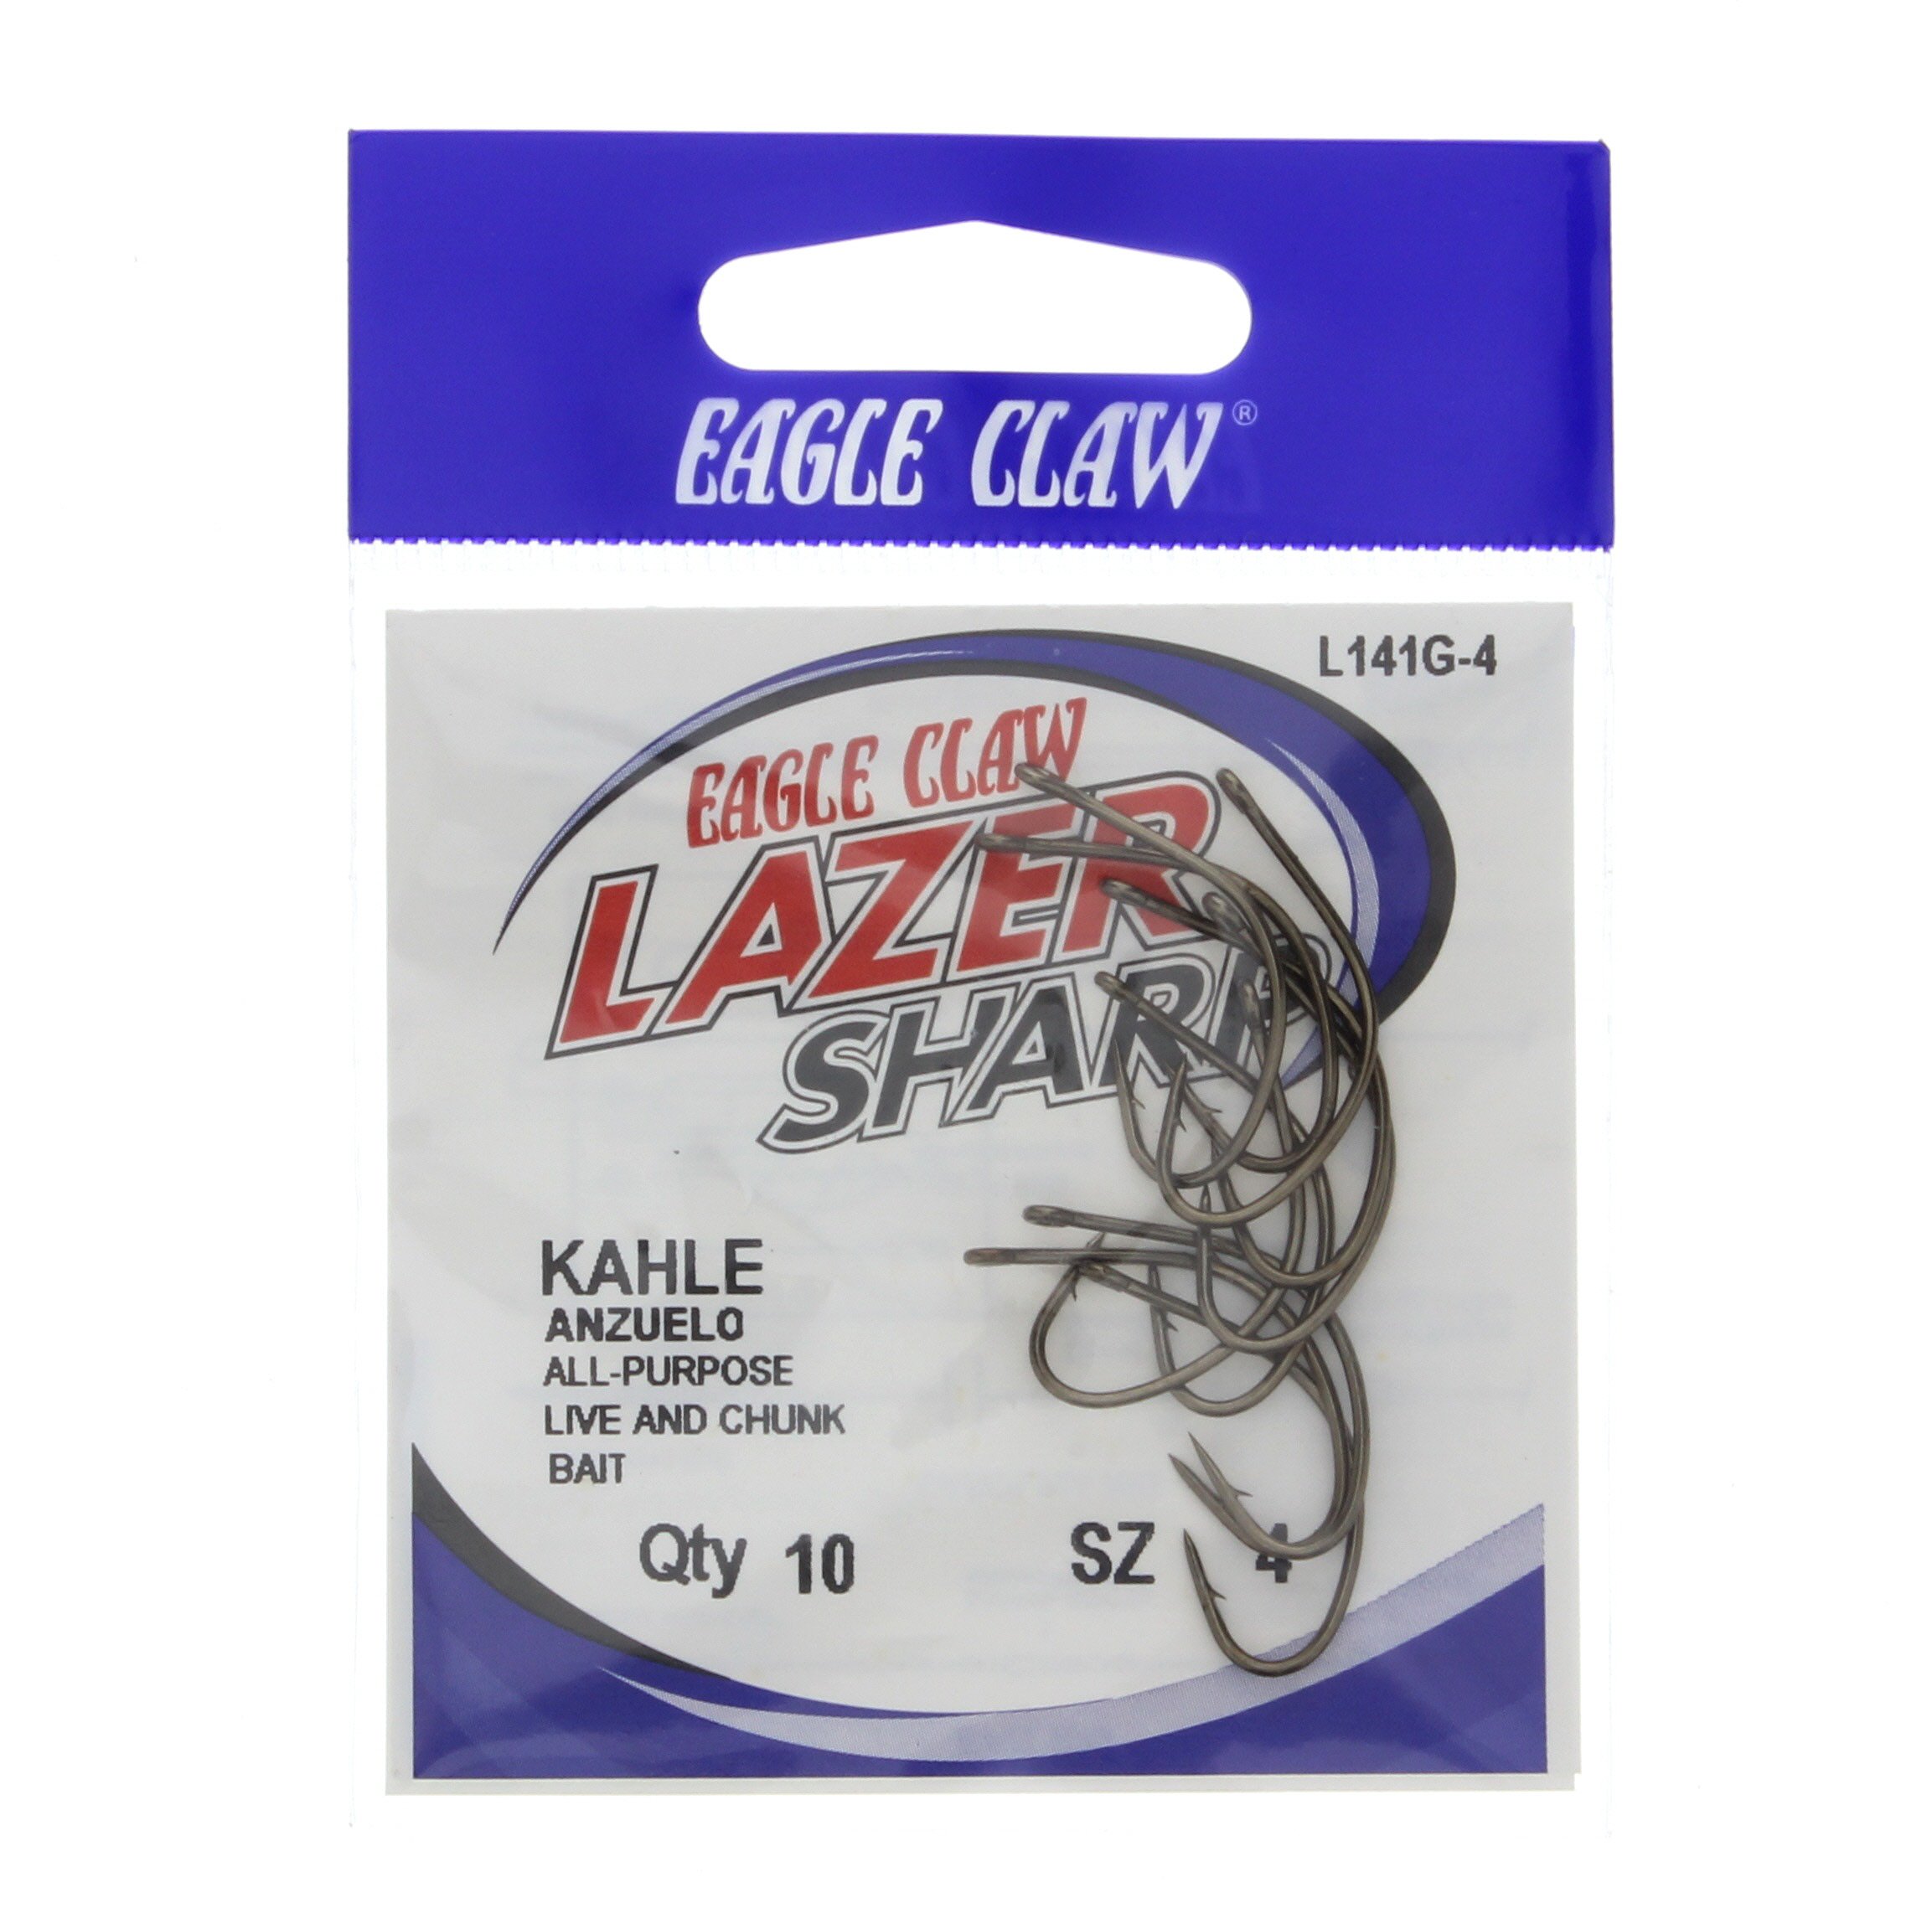 Eagle Claw Lazer Sharp Zip-Lip Kahle Fishing Hooks, Size 4 - Shop